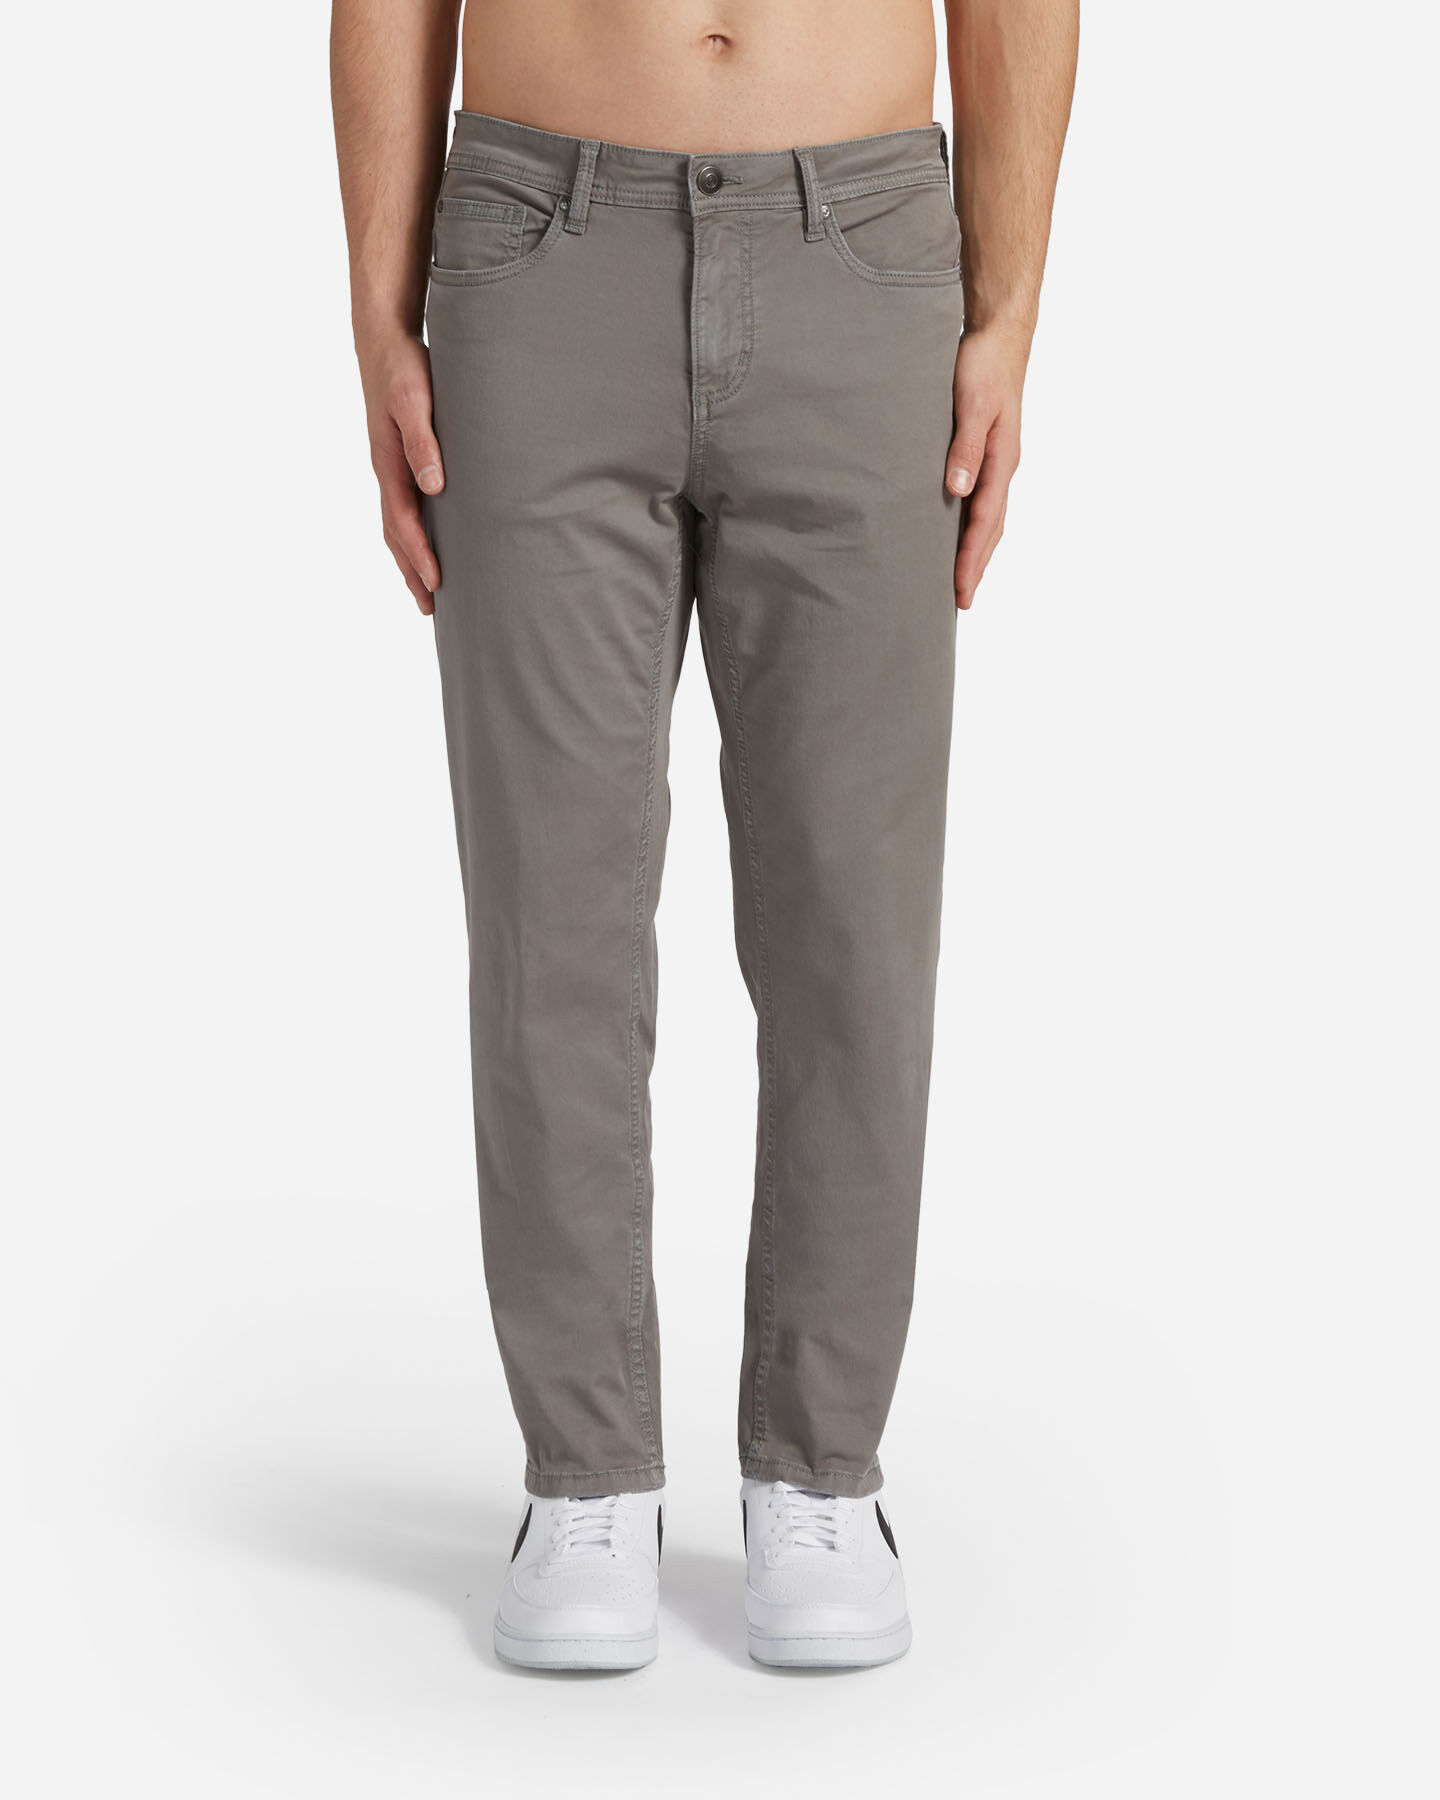  Pantalone DACK'S ESSENTIAL M S4129741|1115|44 scatto 0